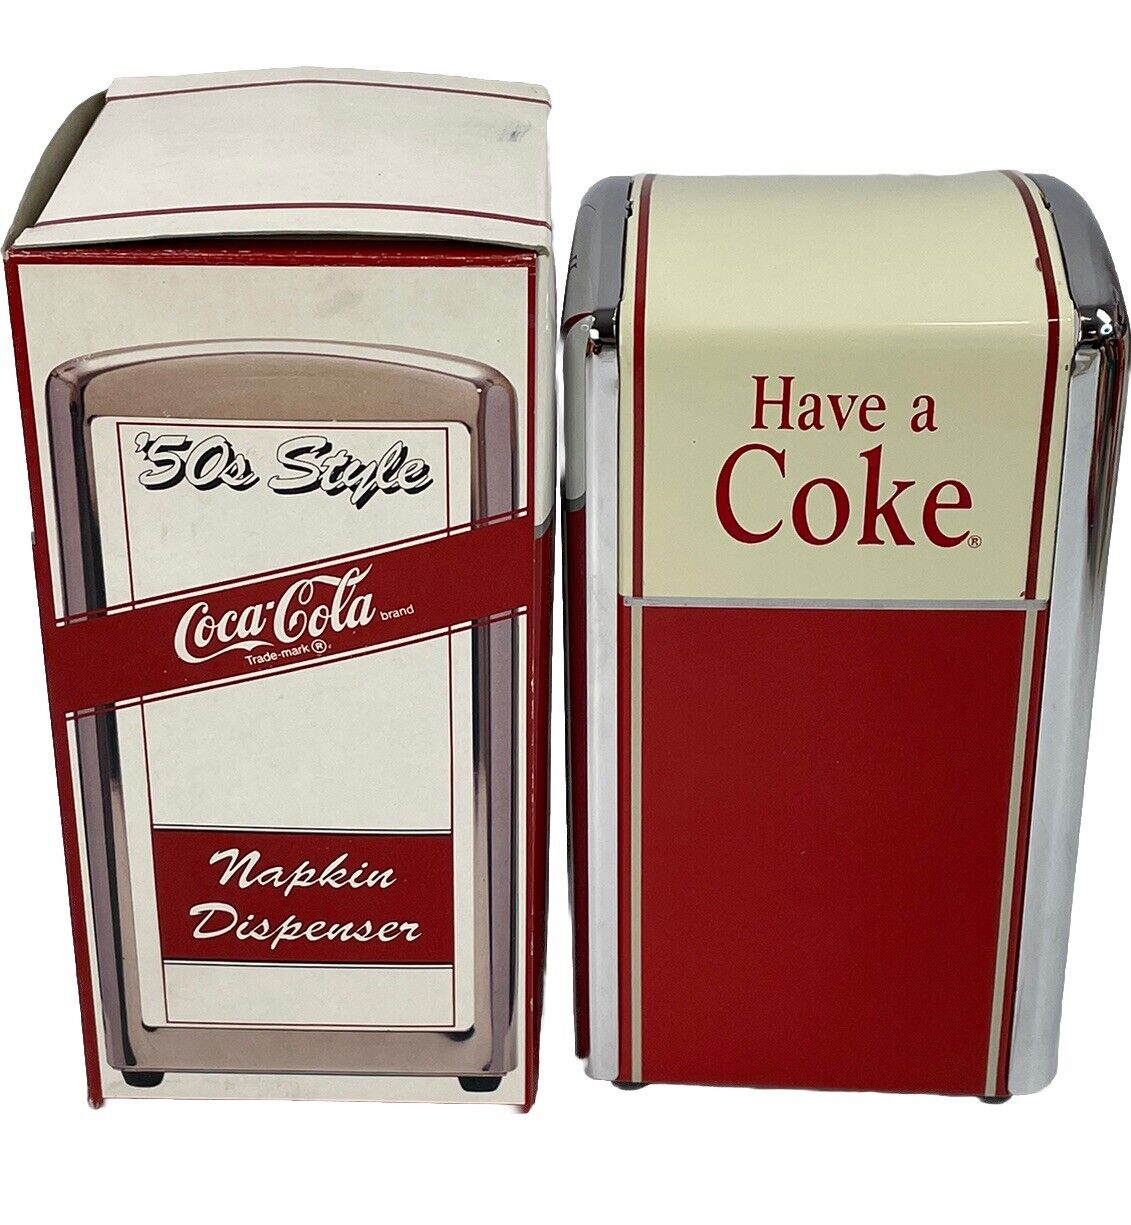 Coca Cola Coke 50s Style Napkin Dispenser Vtg 1992 Diner NEW in Box #10141